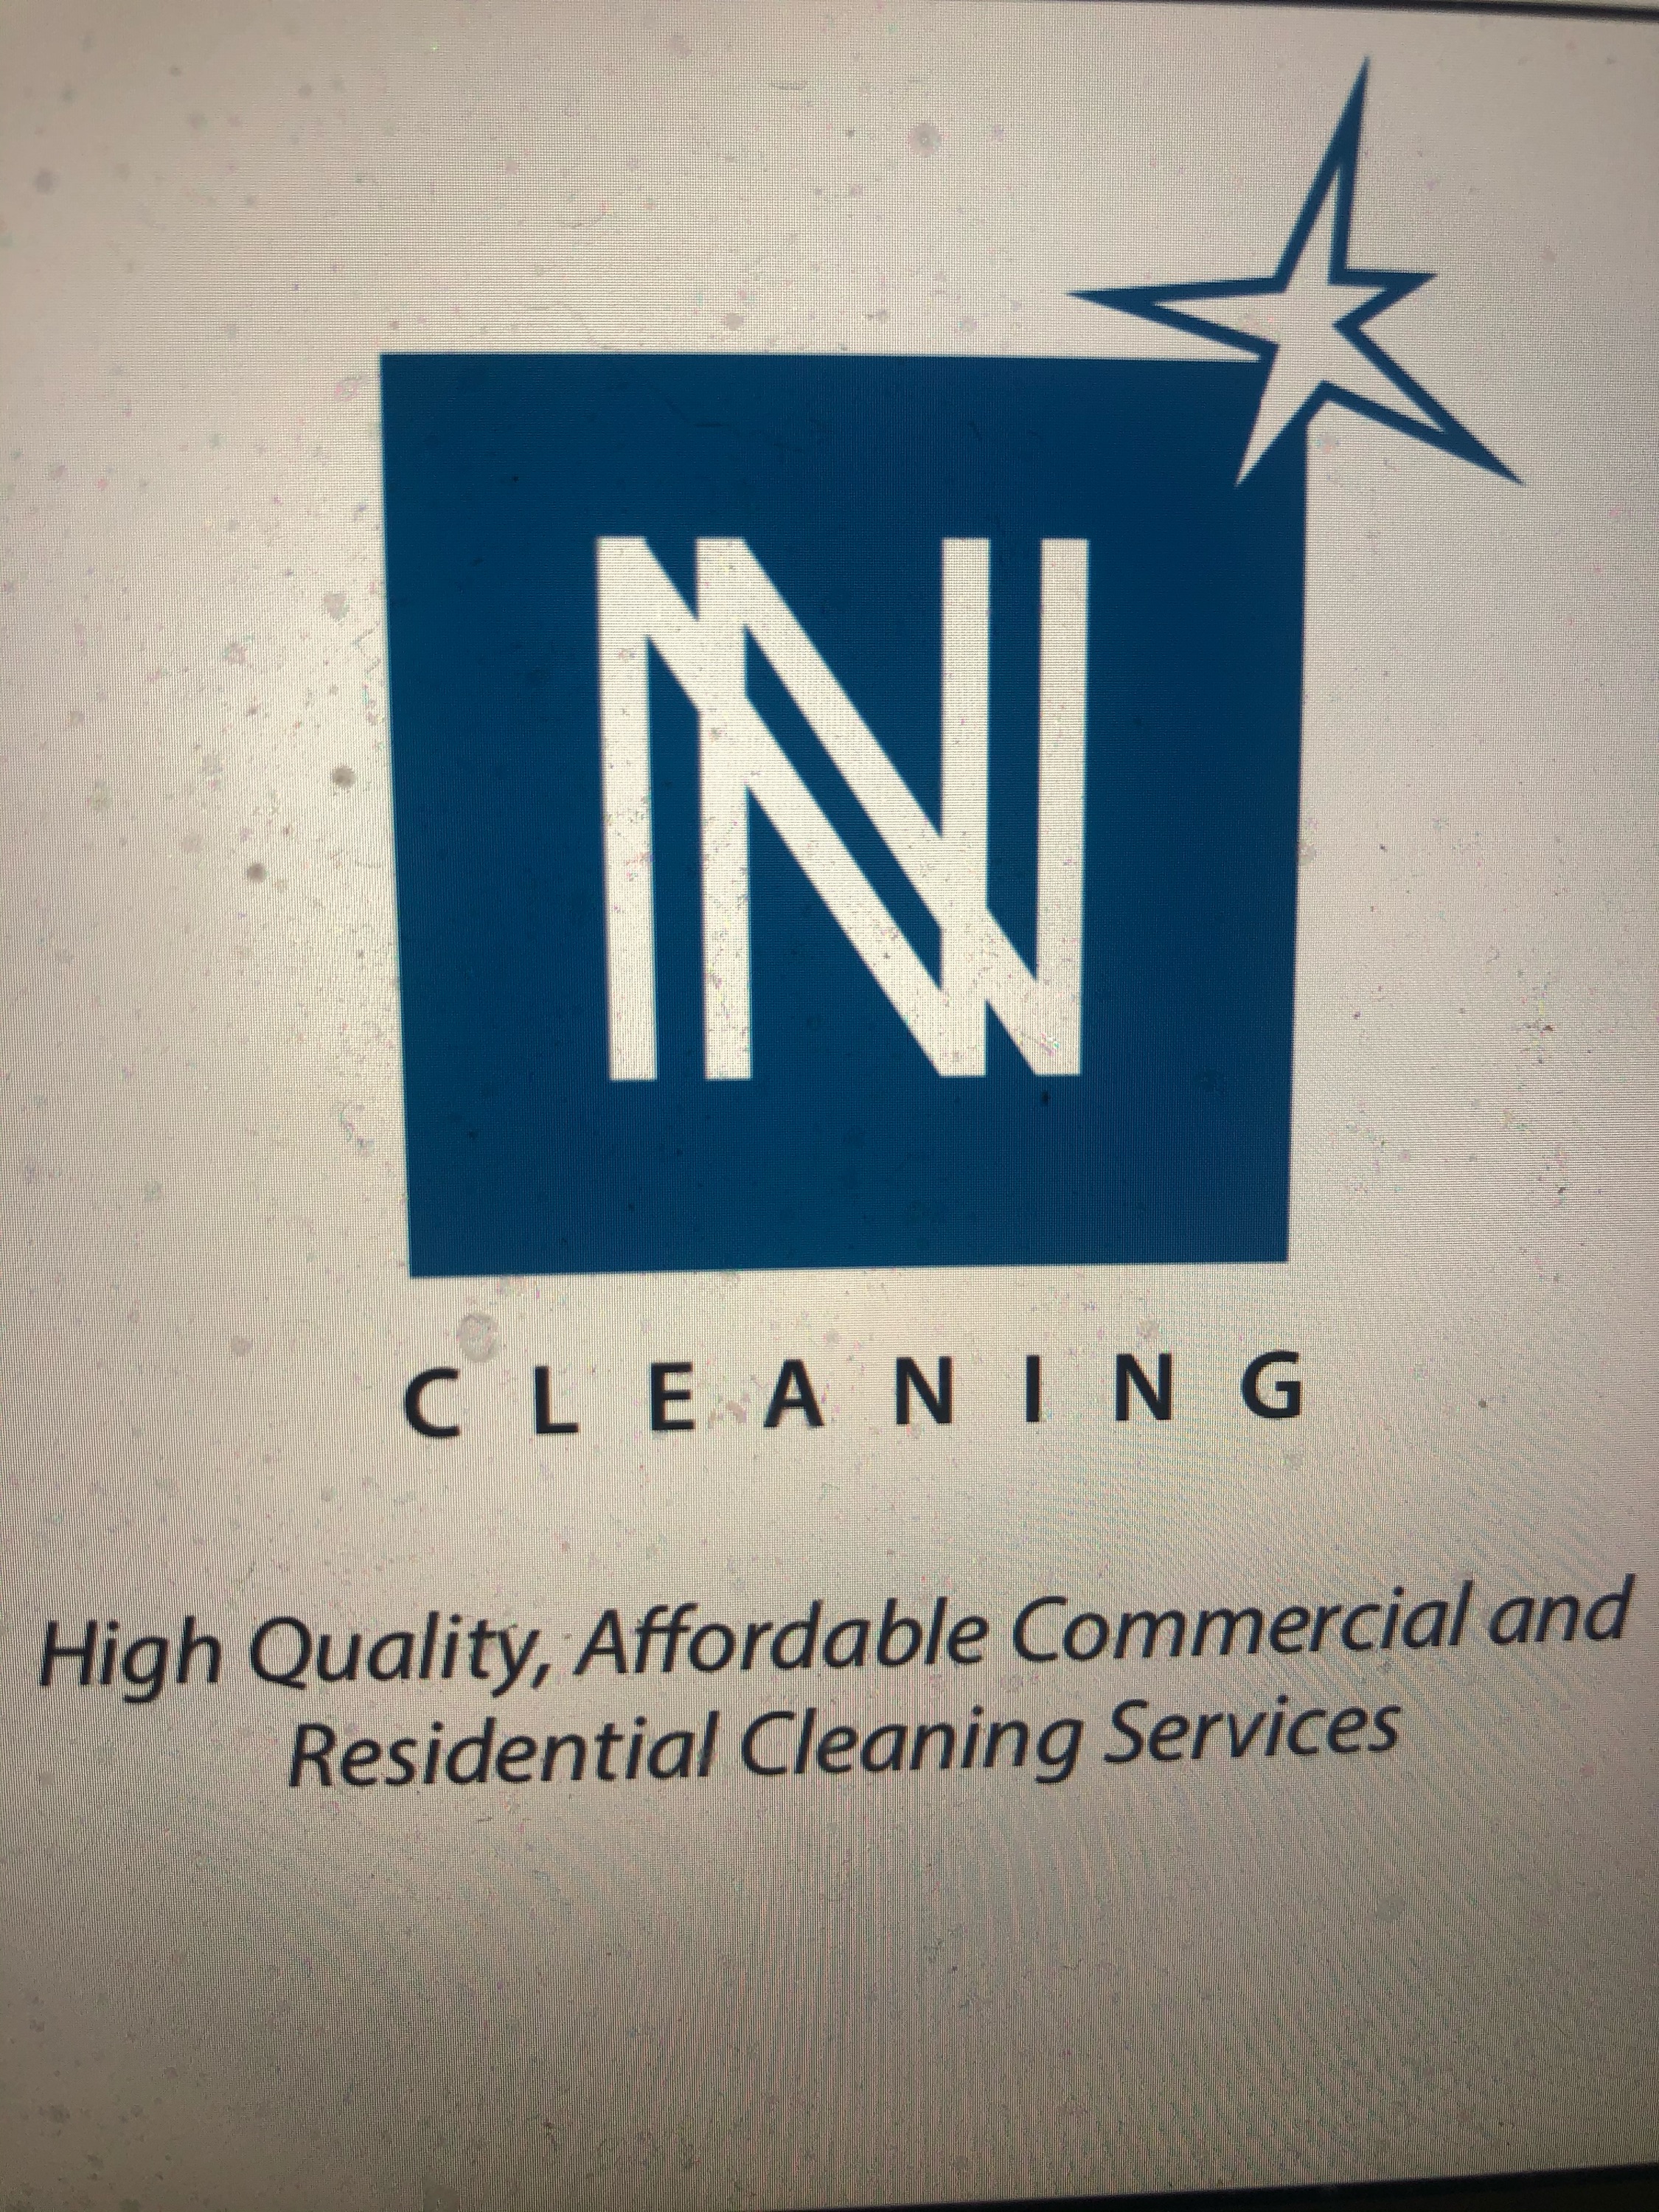 NN Cleaning, LLC Logo